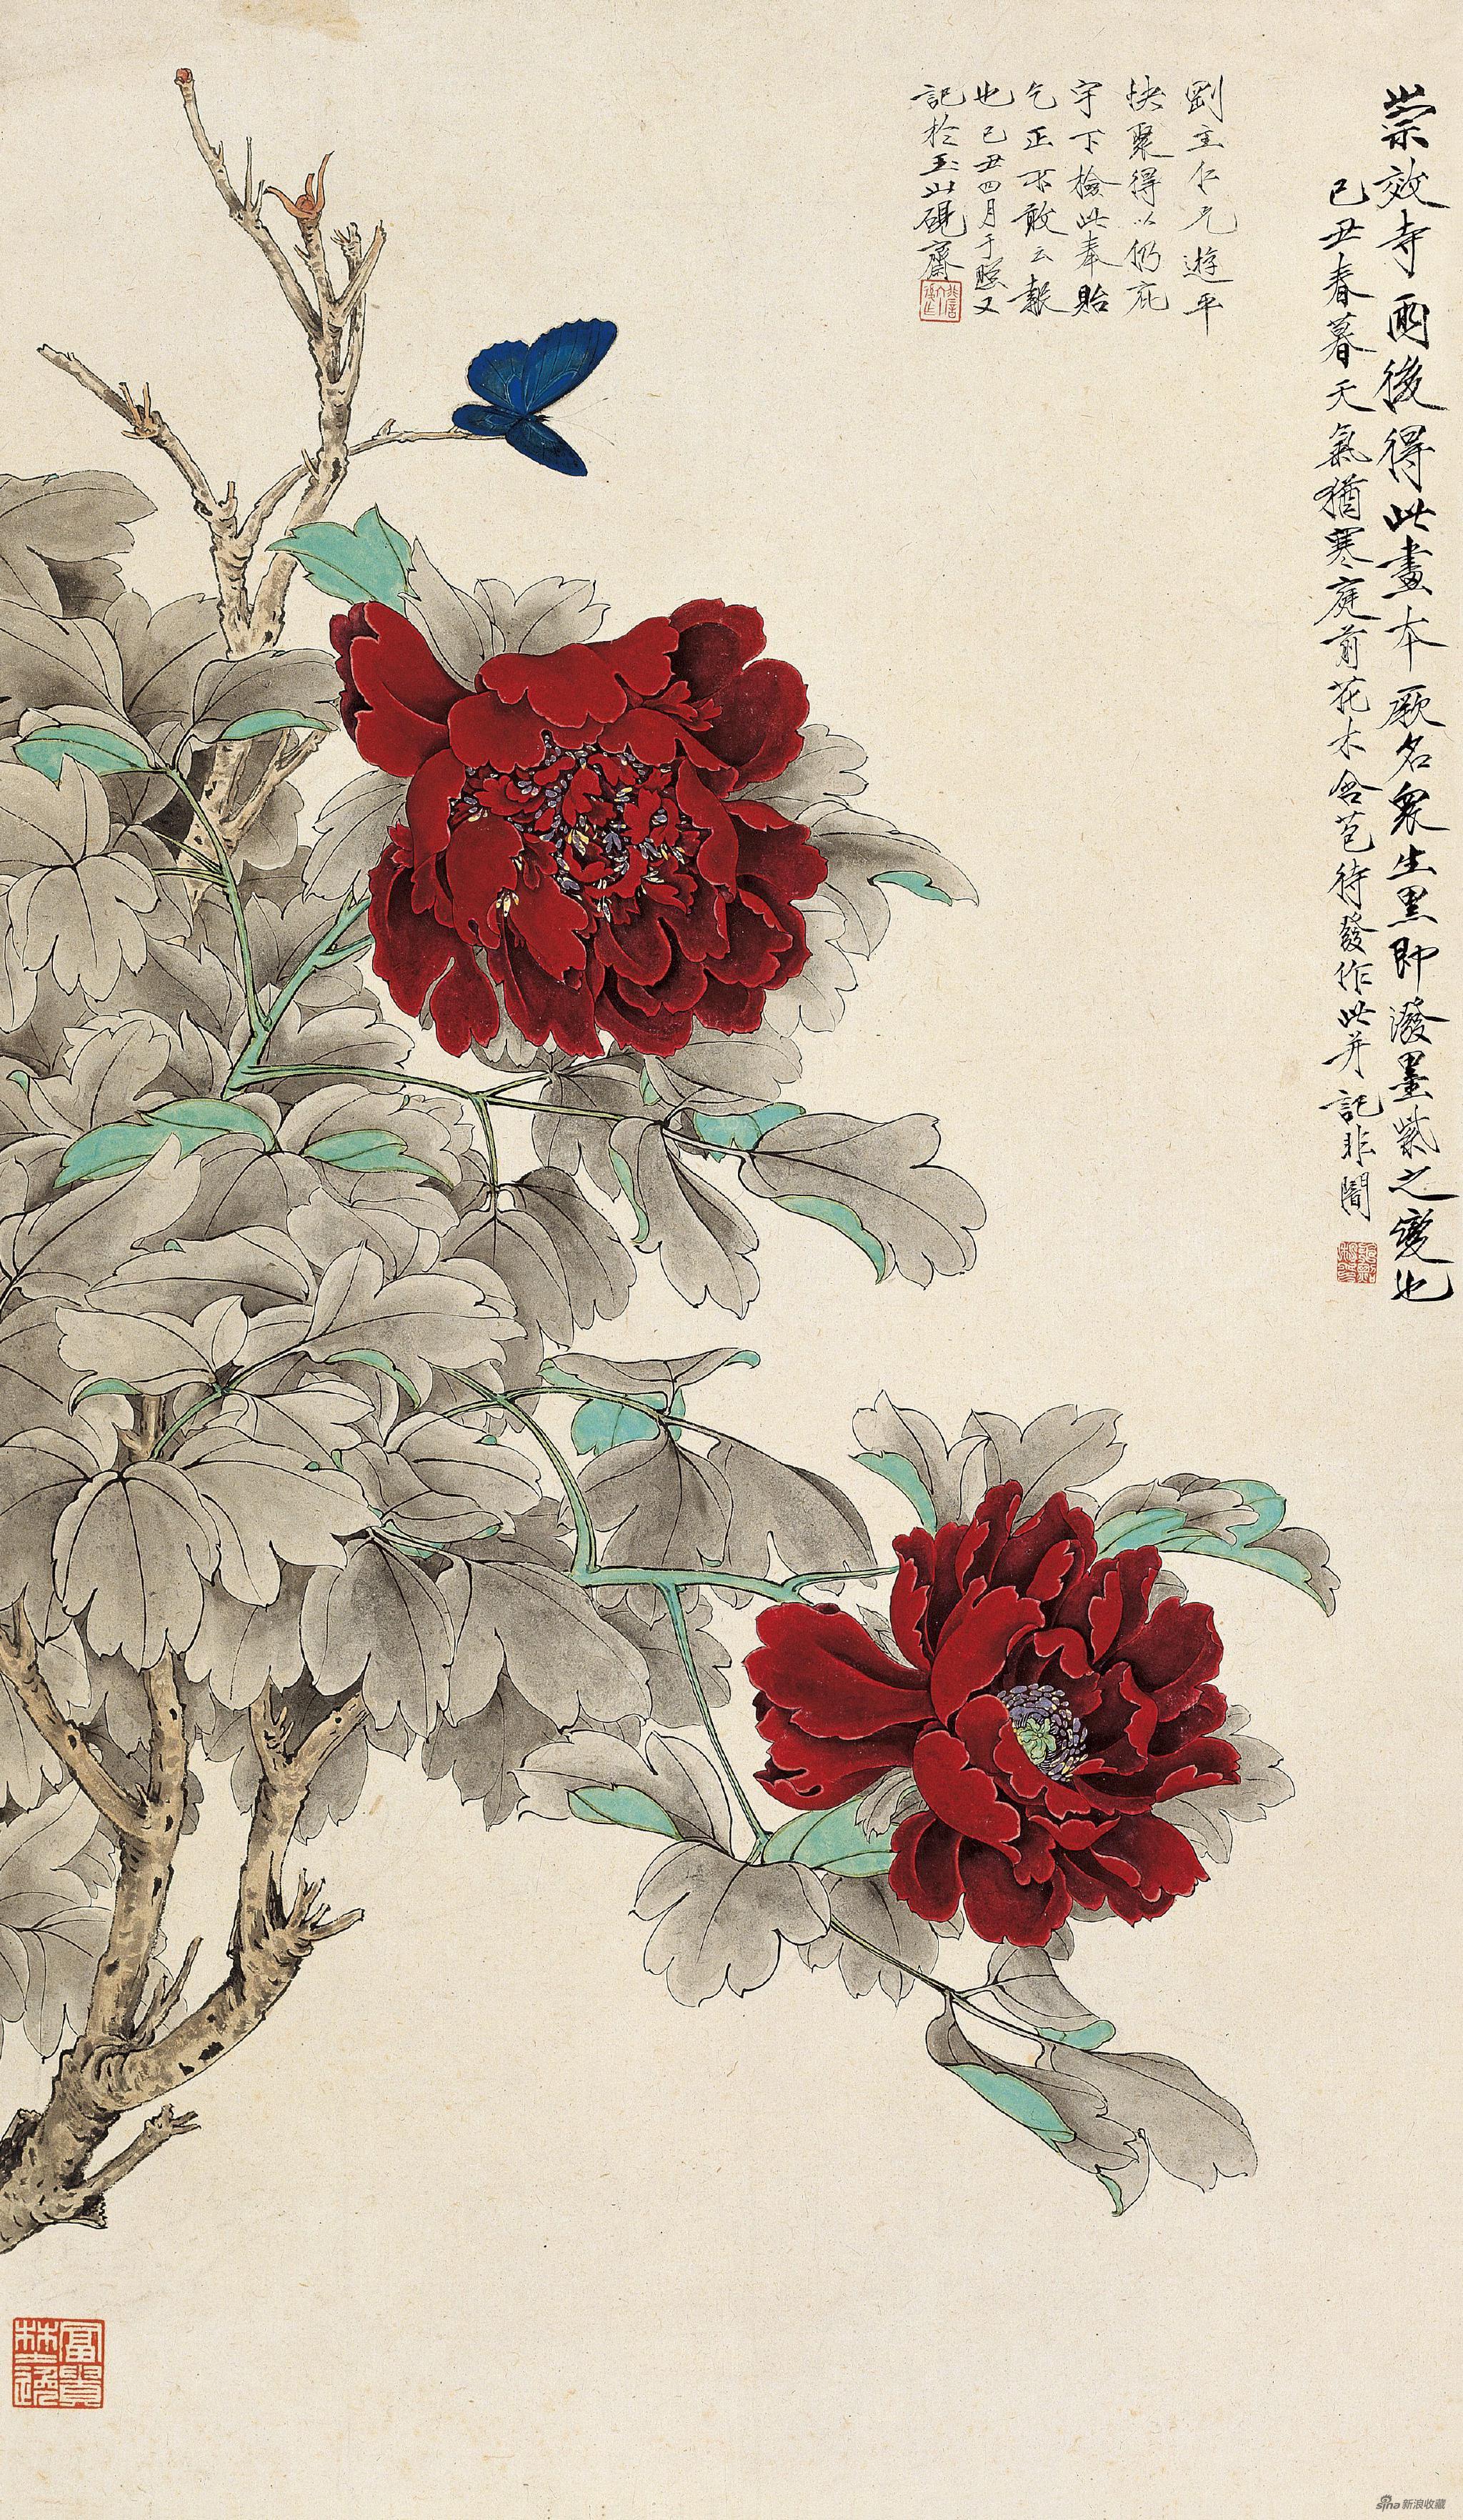 画众生黑 于非闇 89.5cm×52cm 纸本设色 1949年 北京画院藏